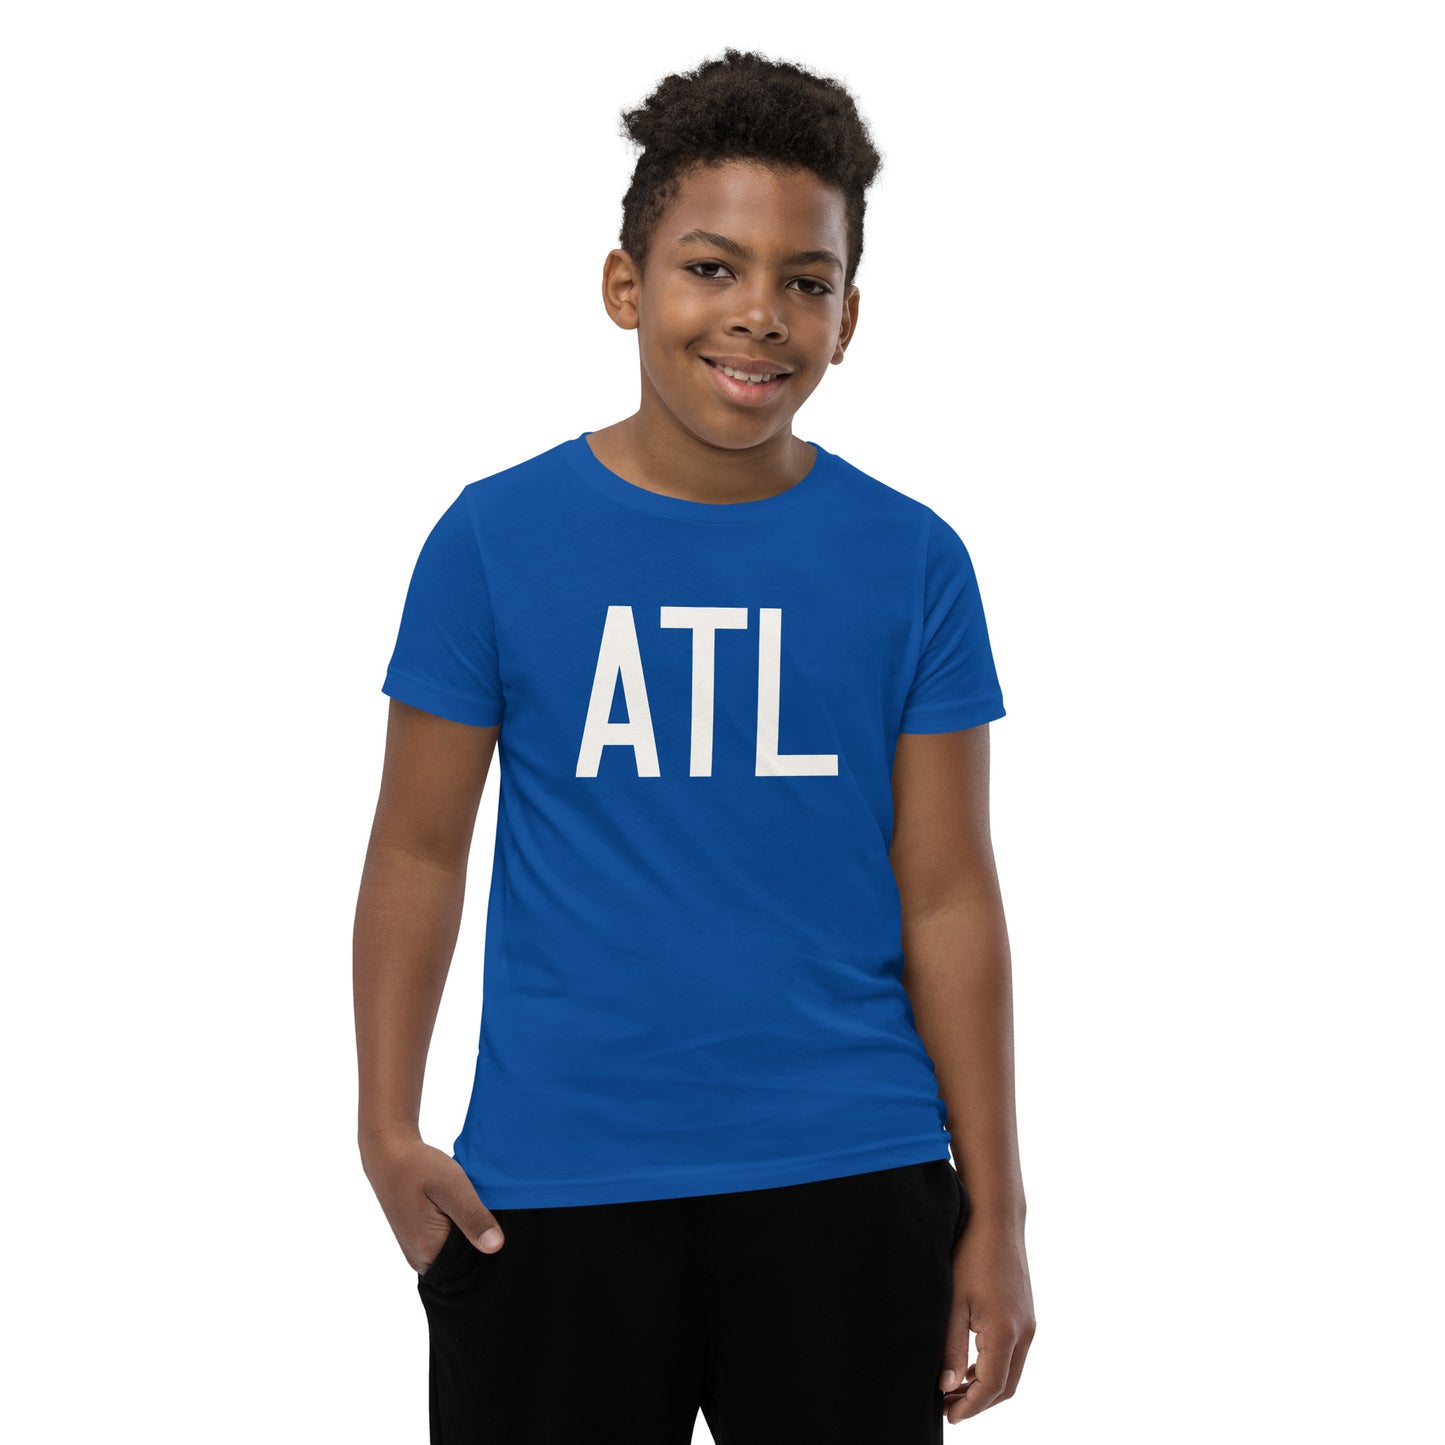 Kid's T-Shirt - White Graphic • ATL Atlanta • YHM Designs - Image 11